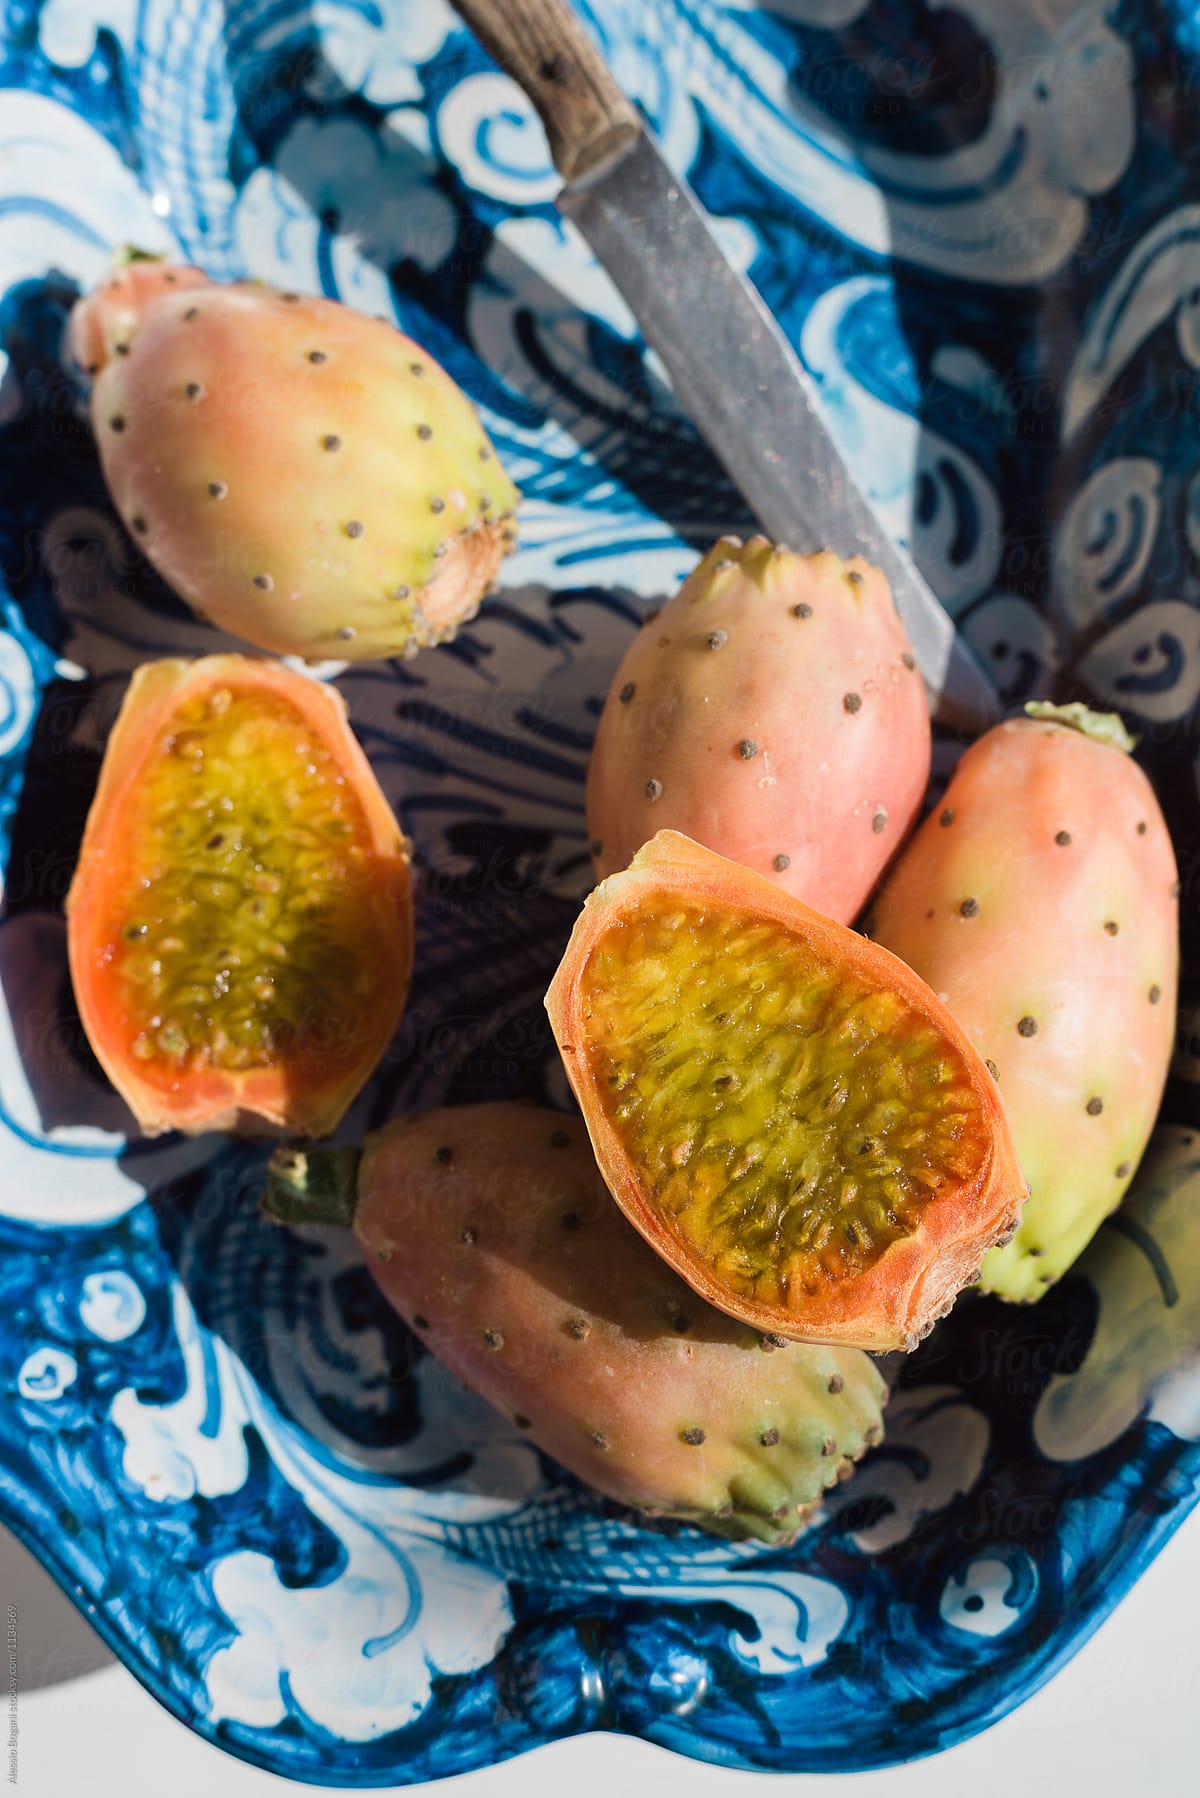 Opuntia cactus fruits